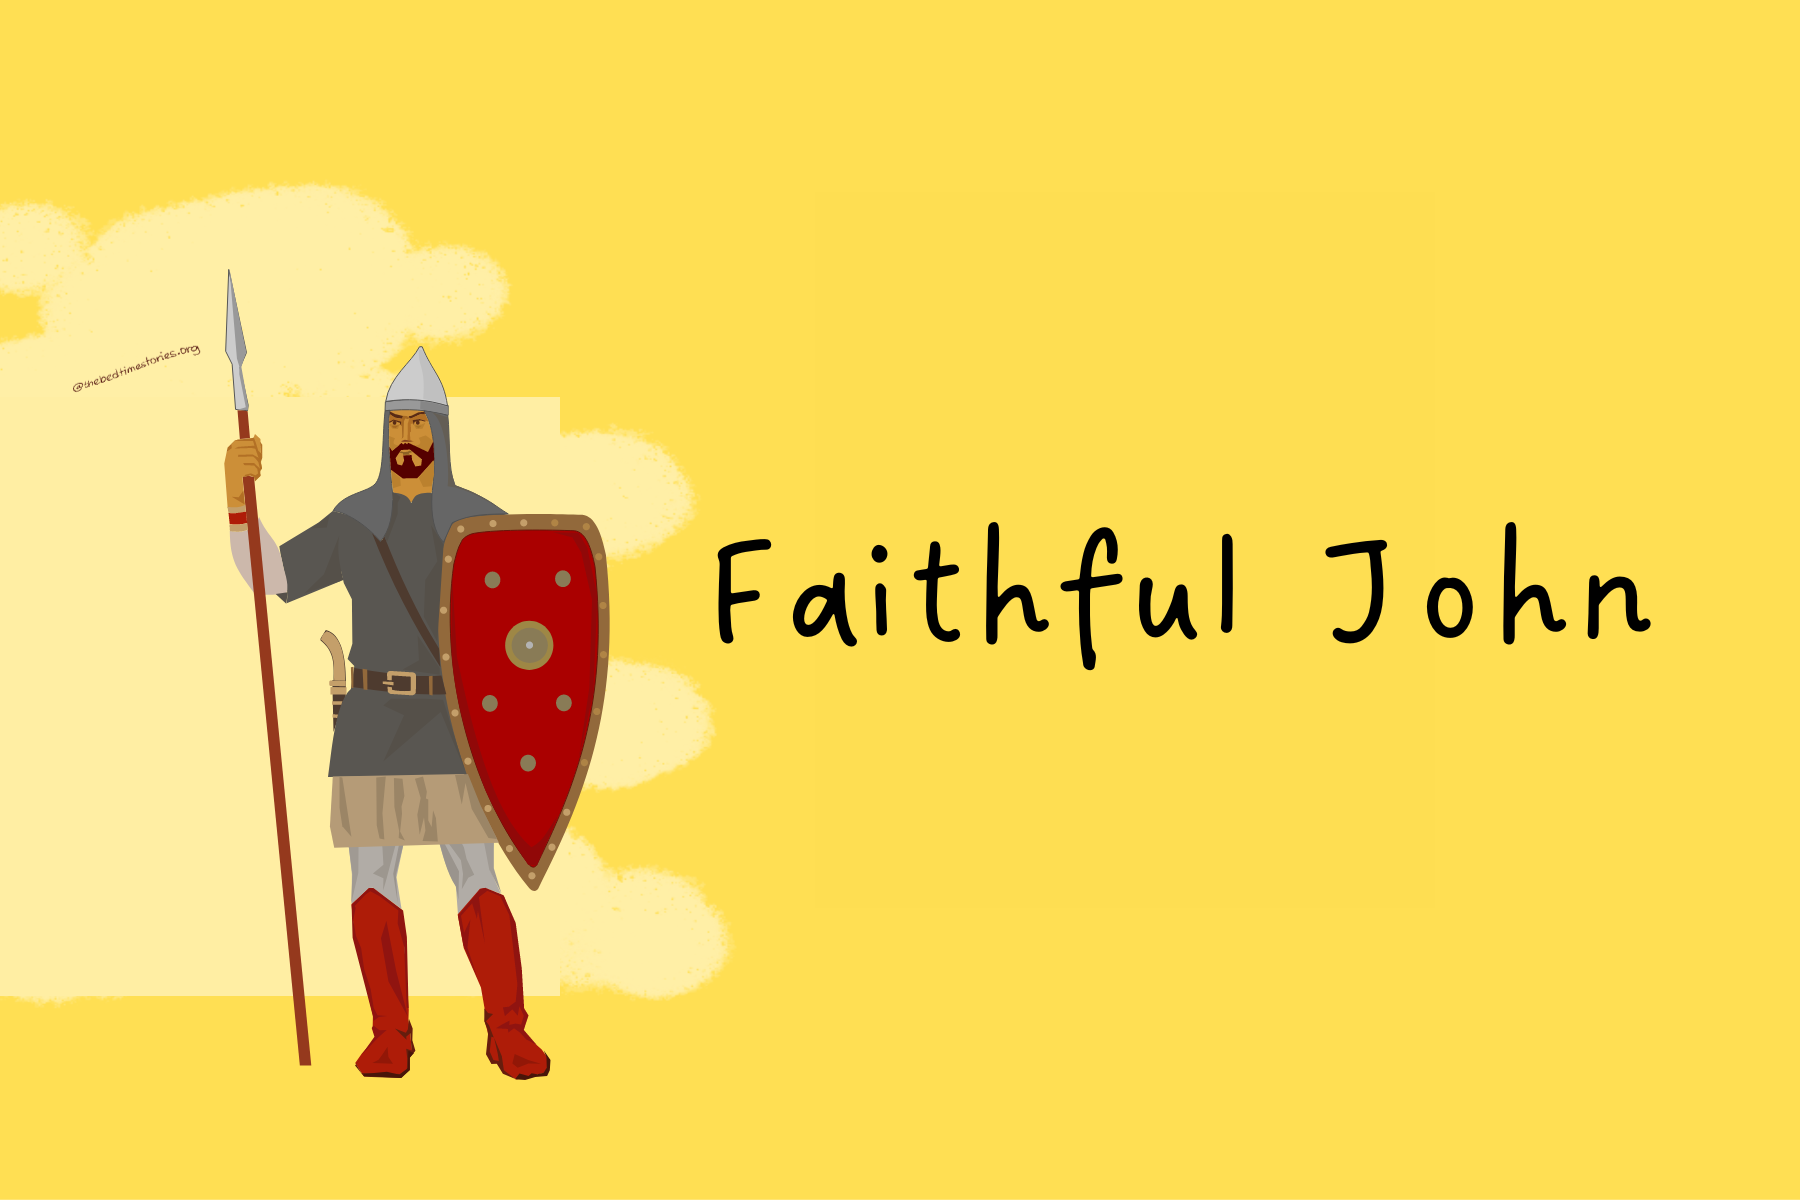 Faithful John